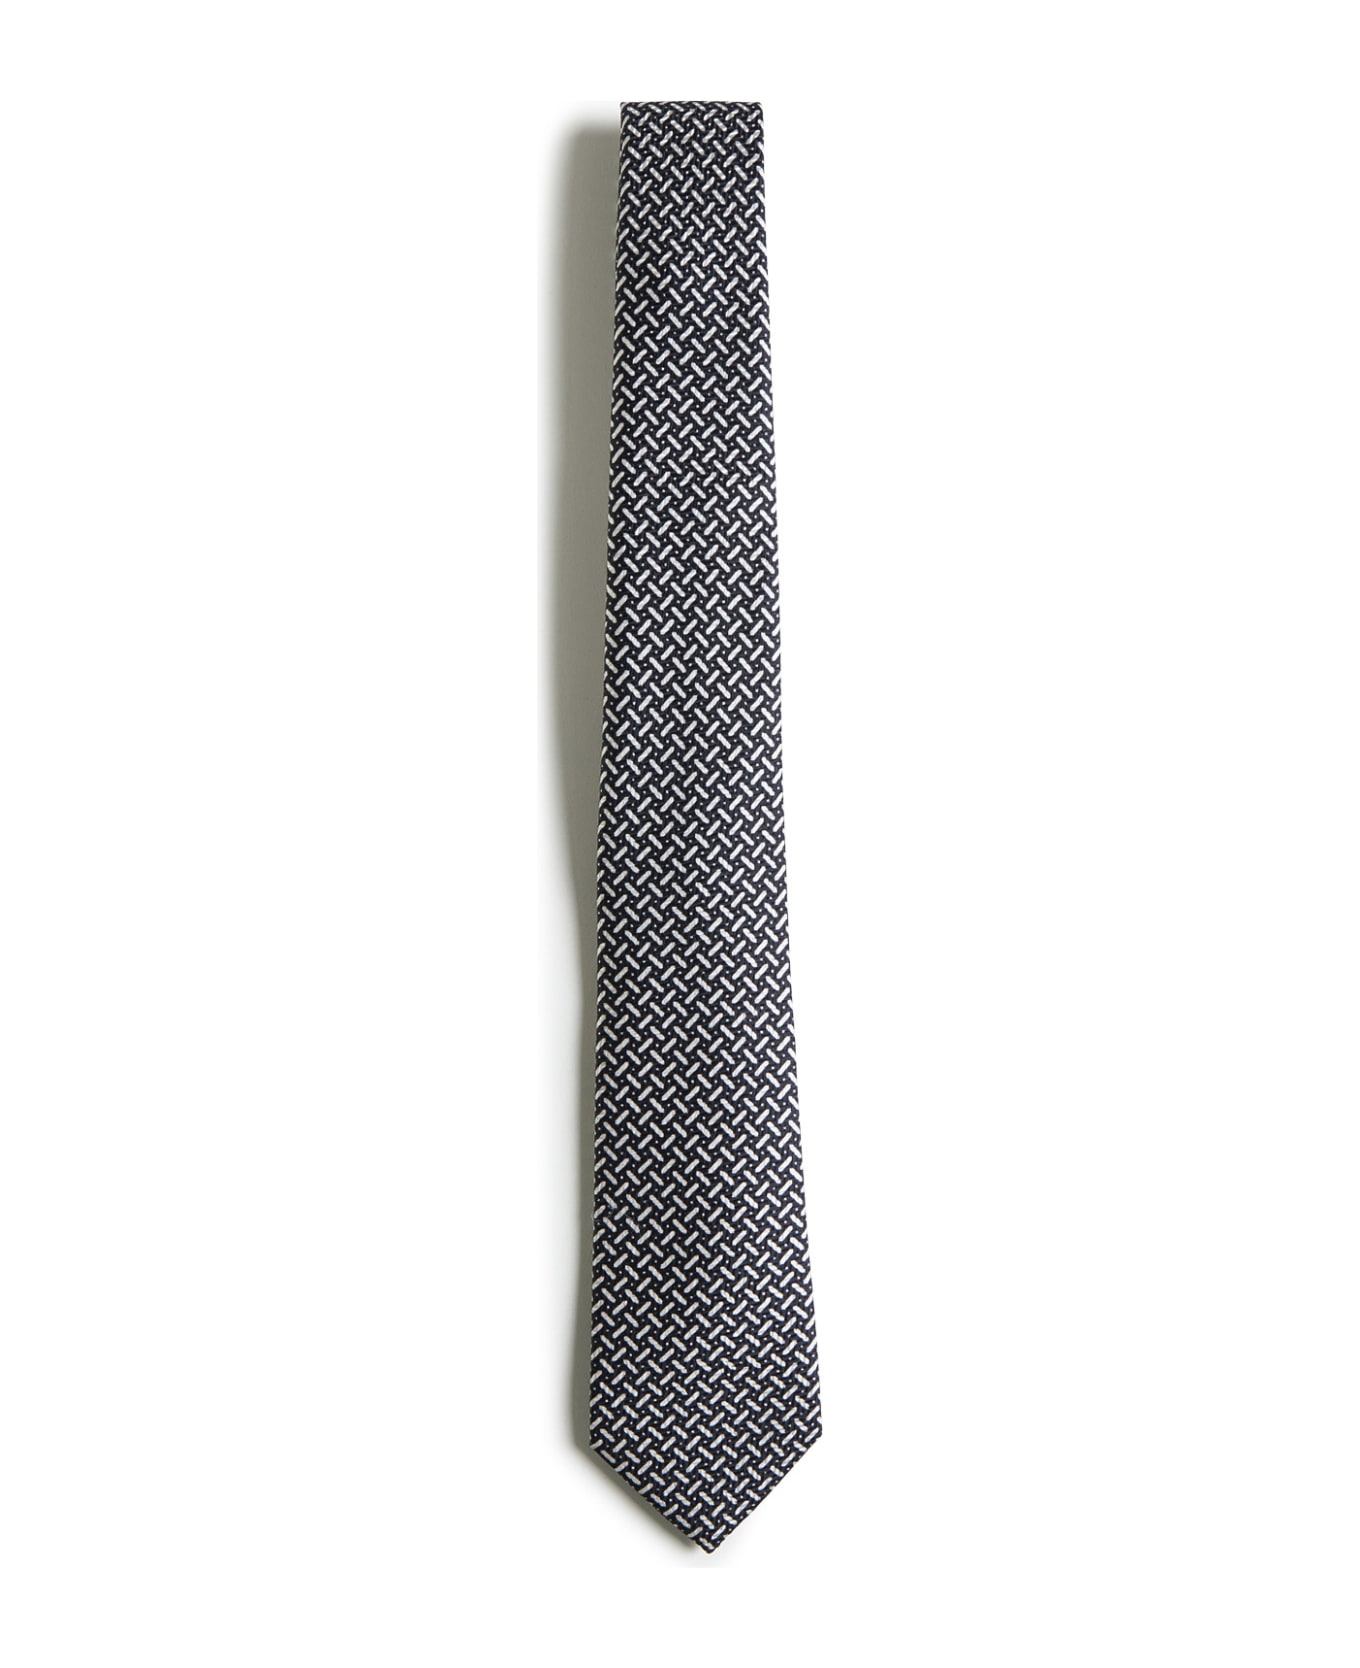 Giorgio Armani Tie - Black